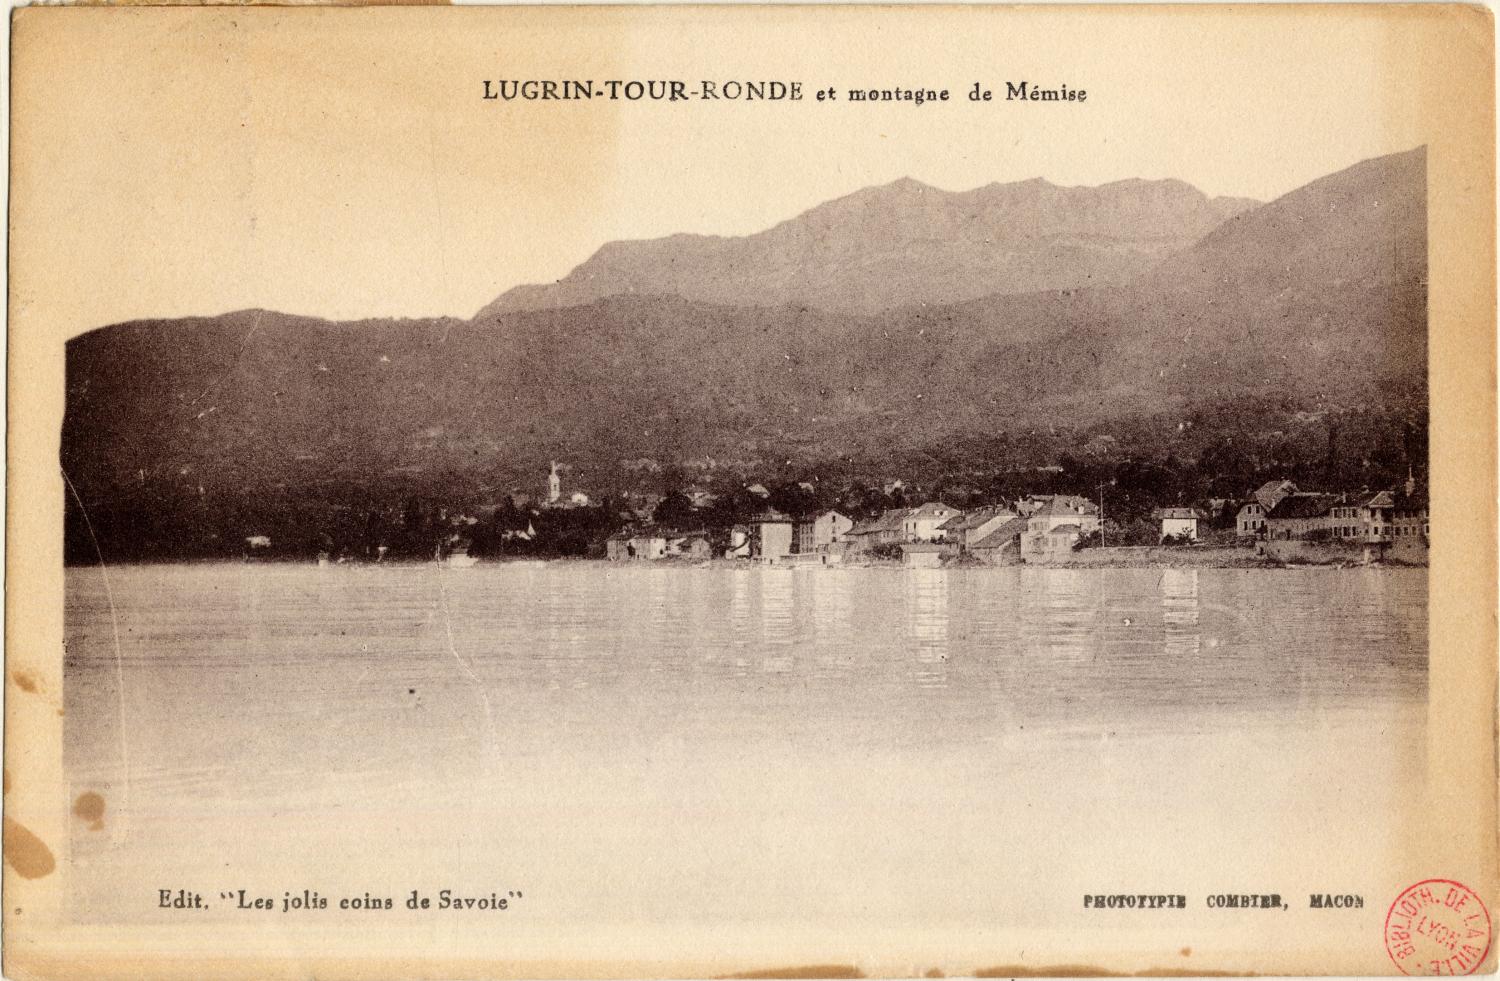 Lugrin-Tour-Ronde et montagne de Mémise